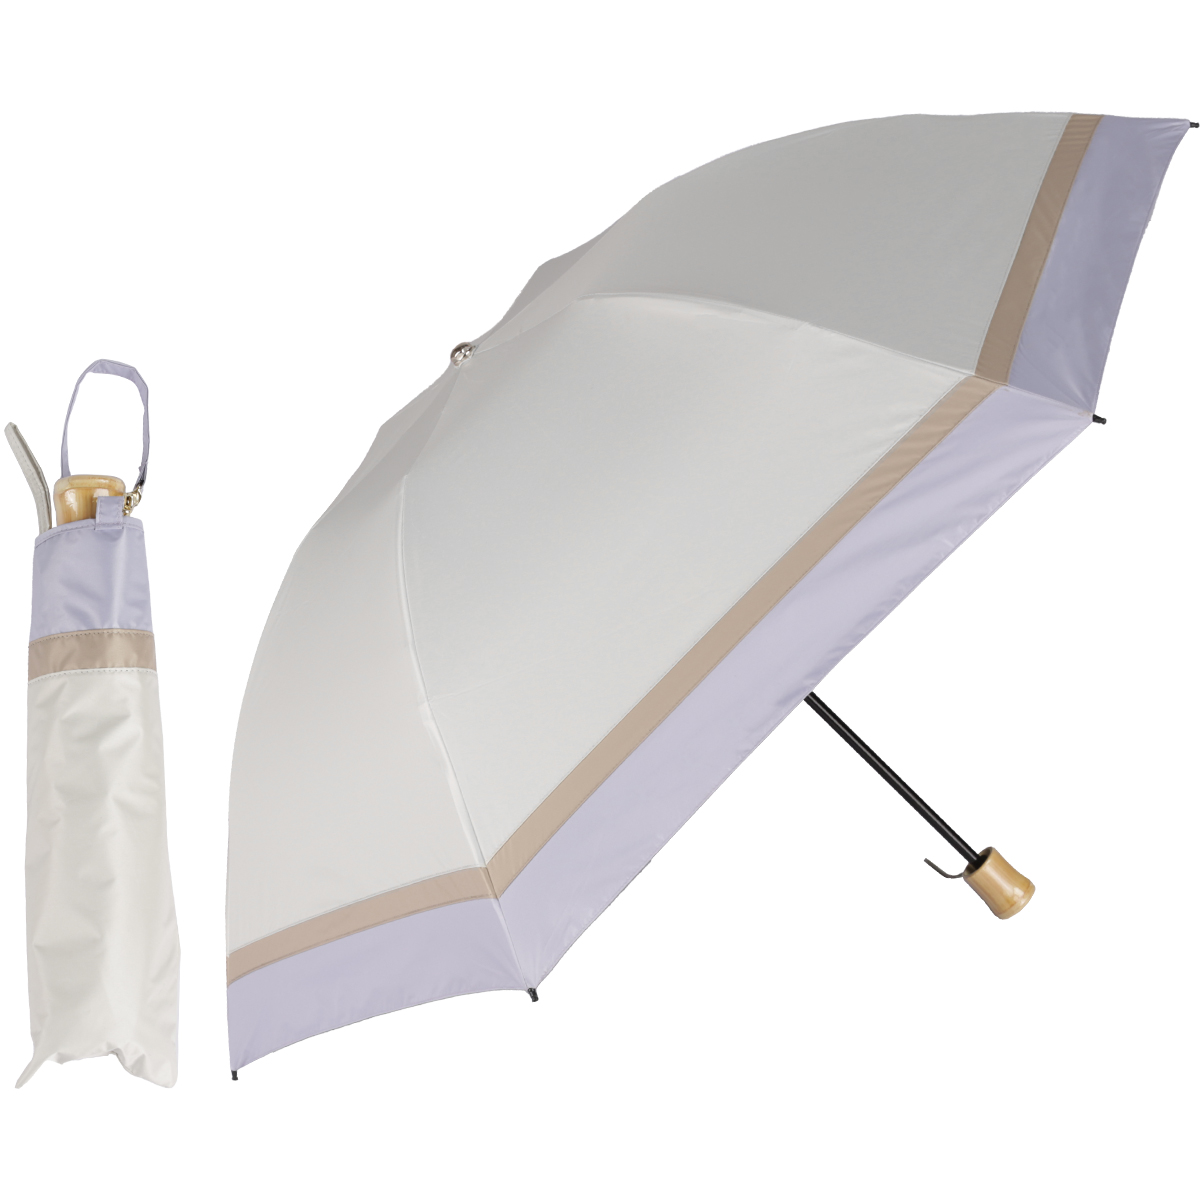 日傘 折りたたみ 完全遮光 晴雨兼用折りたたみ傘 軽量 折り畳み傘 逆さ 